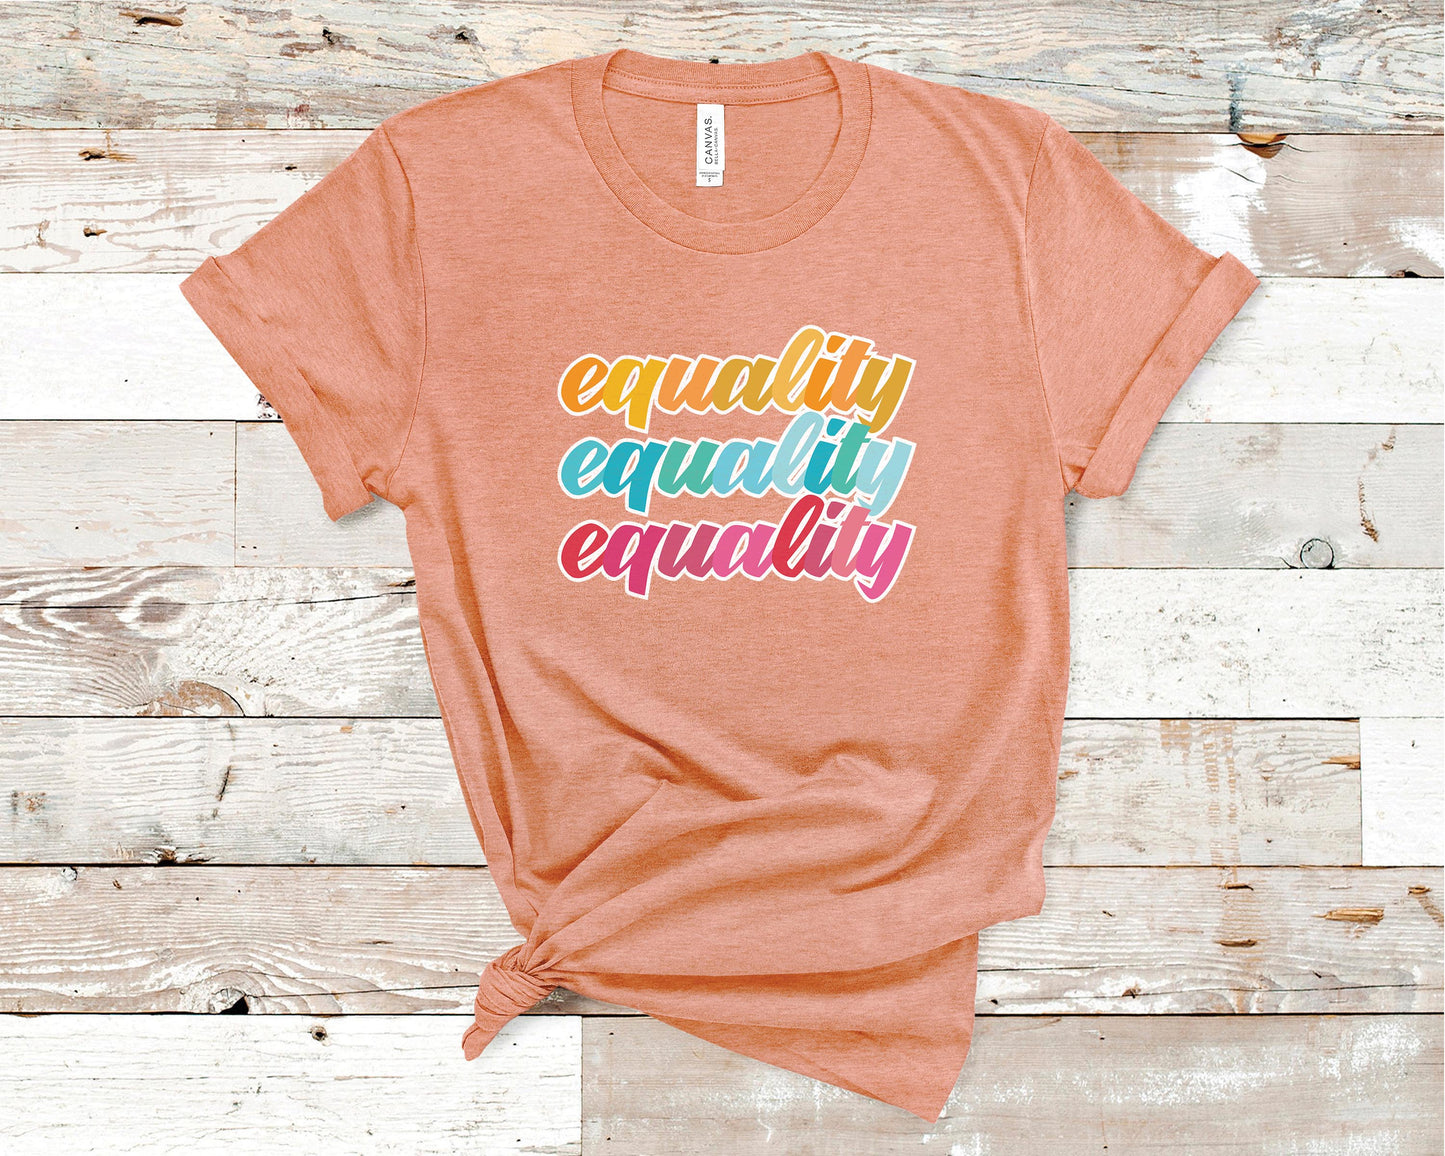 Equality Equality Equality - LGBTQ